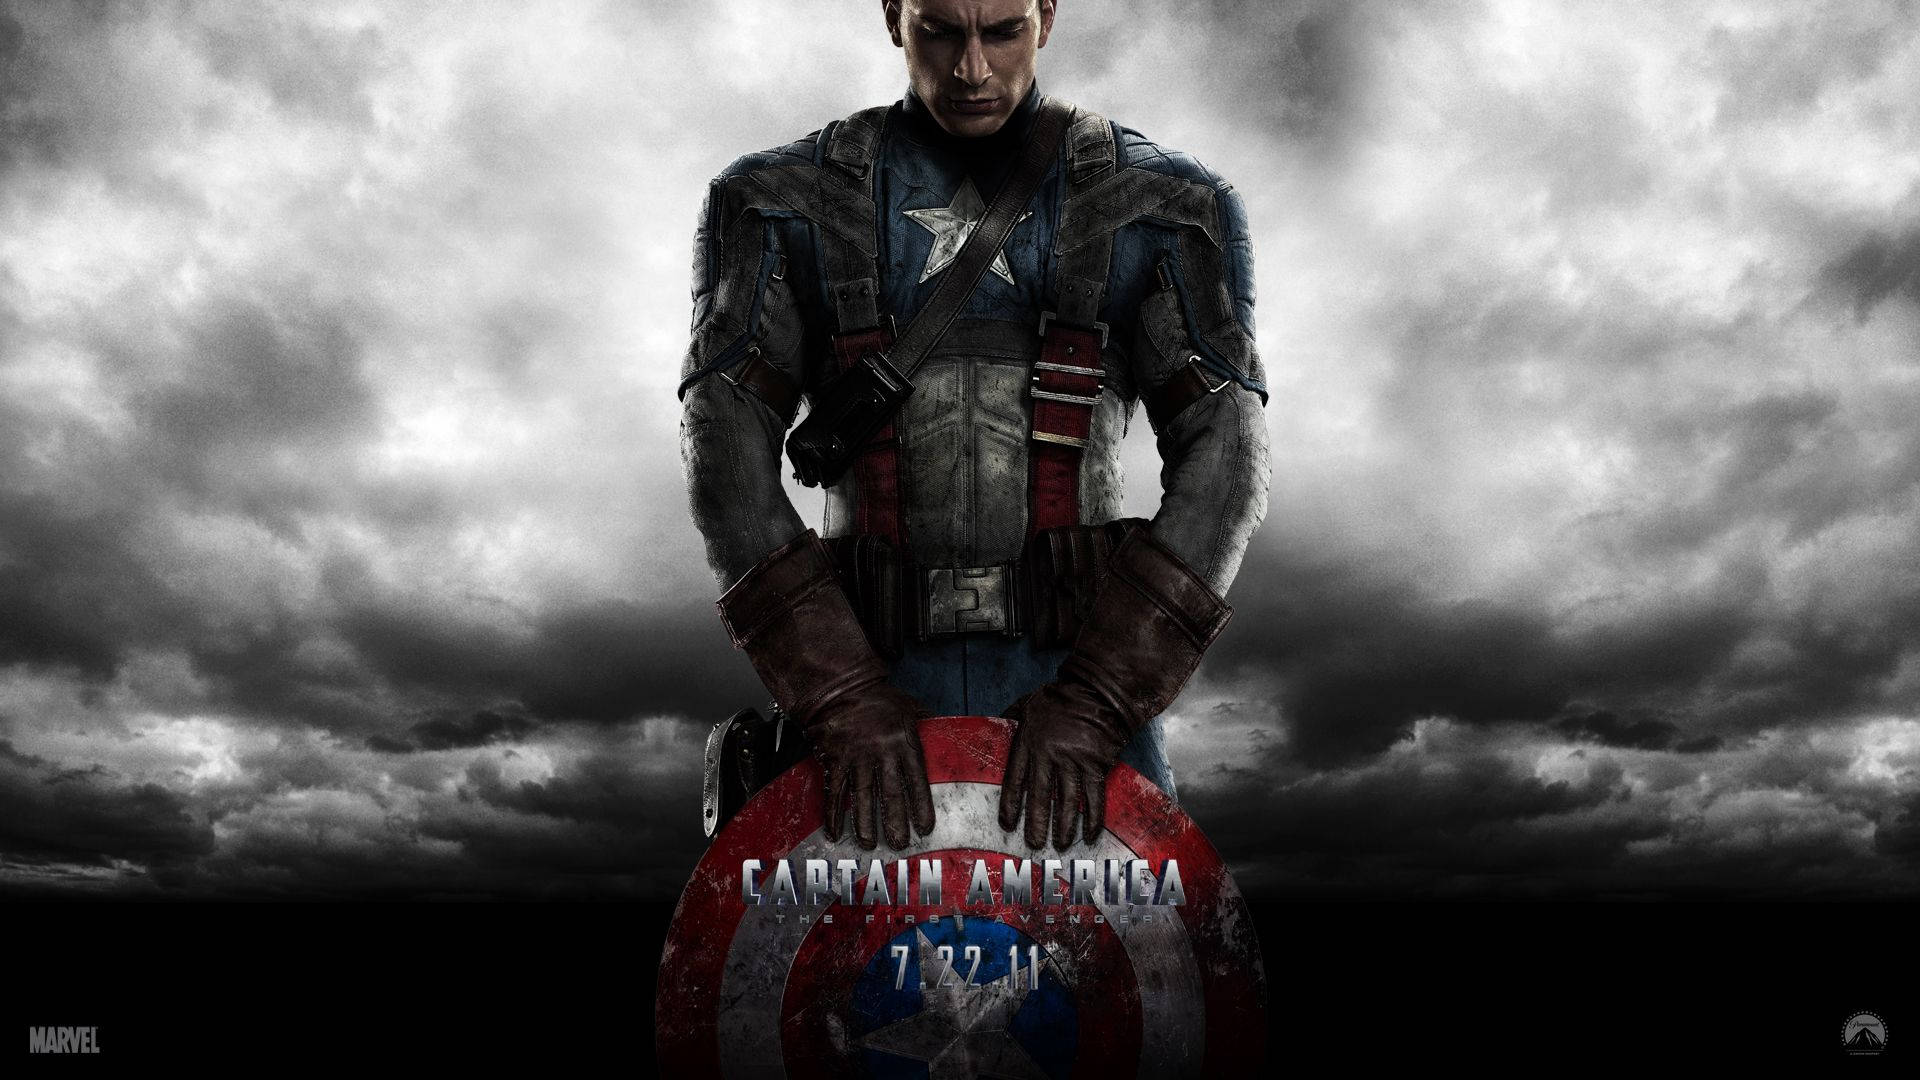 Captain America Shielding the World from Danger Wallpaper